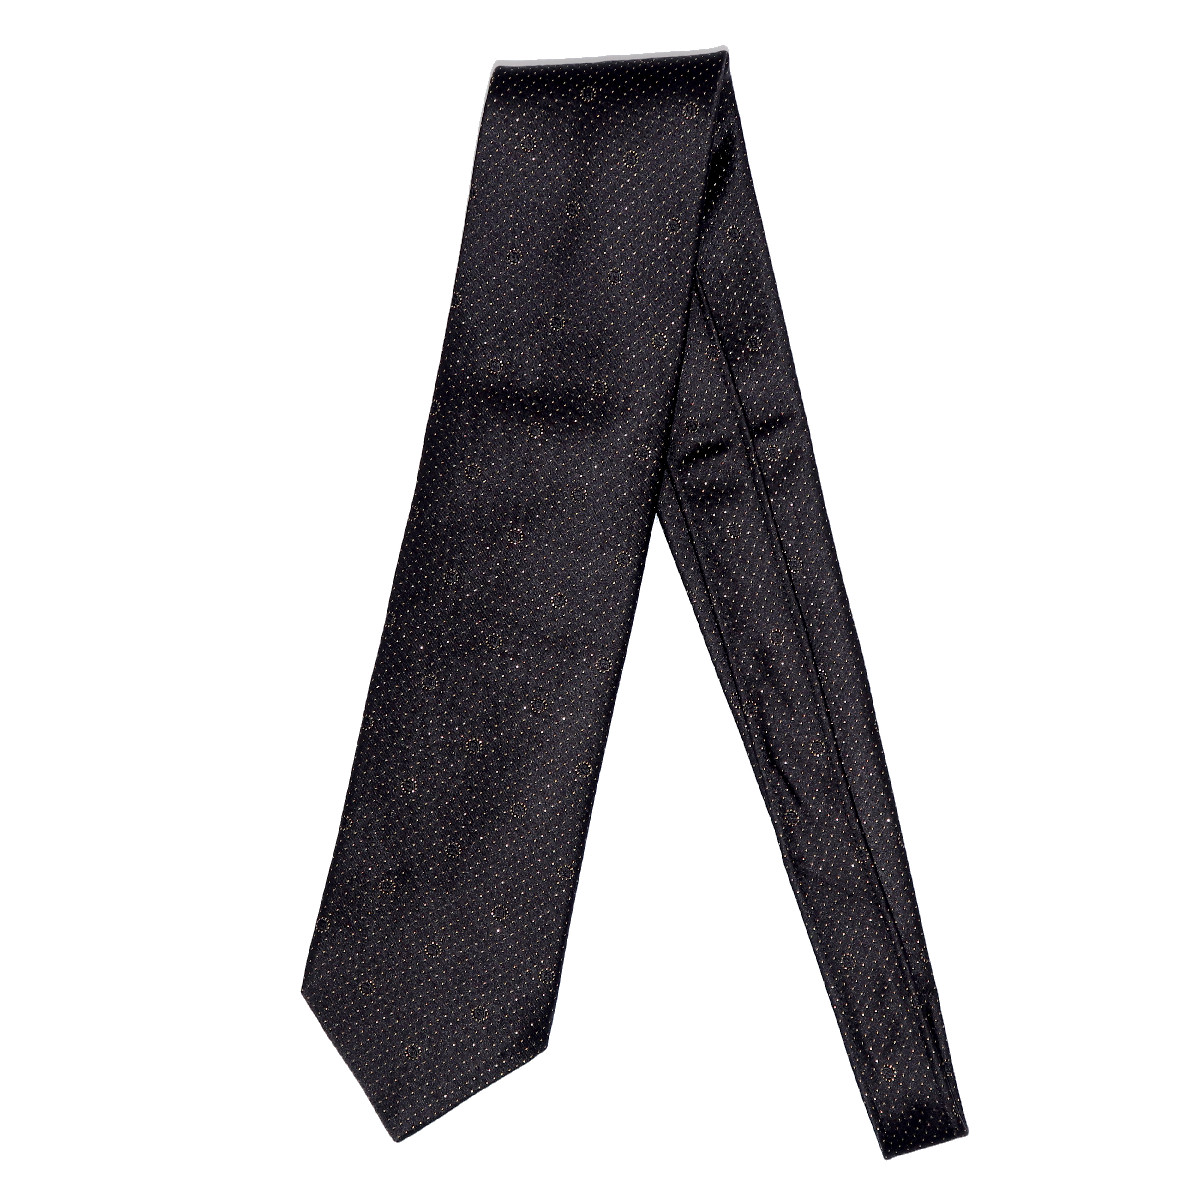 Authentic Louis Vuitton Bowtie + Pocket Square (1 Set) 100% New Black